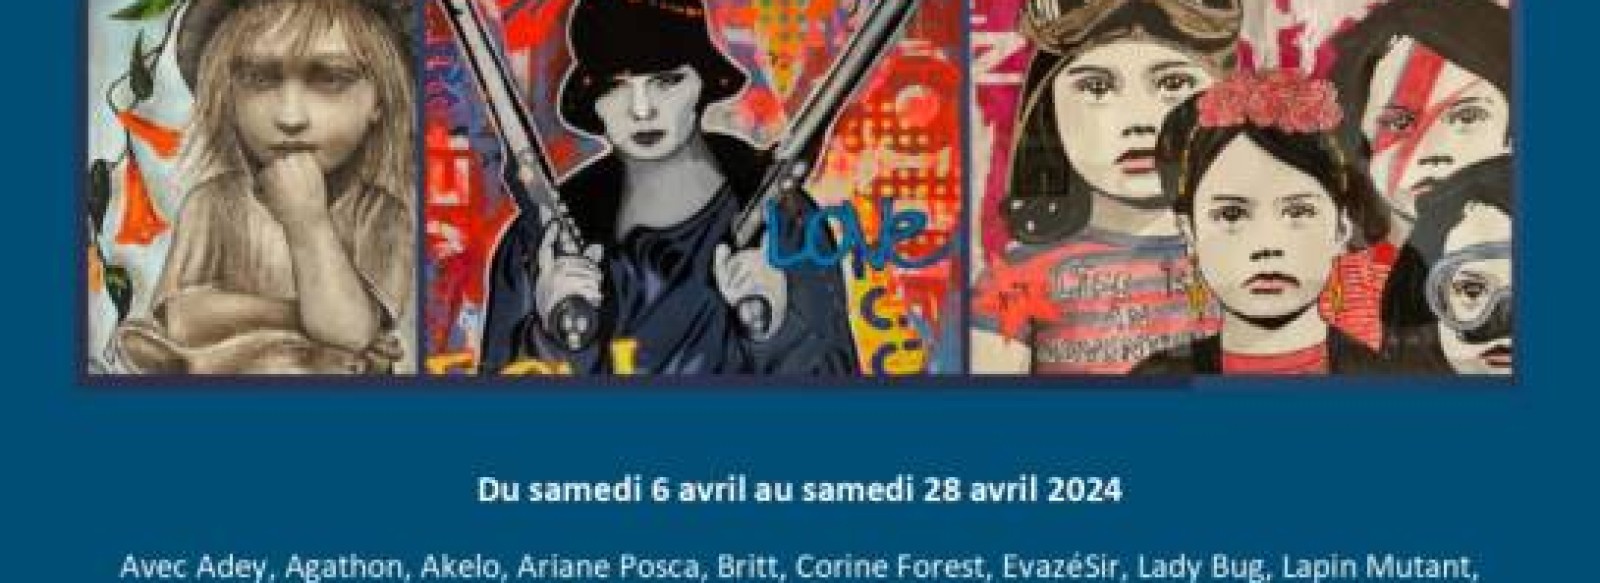 La Graffiti Compagnie presente "Les dames de la cote, l'art urbain au feminin"